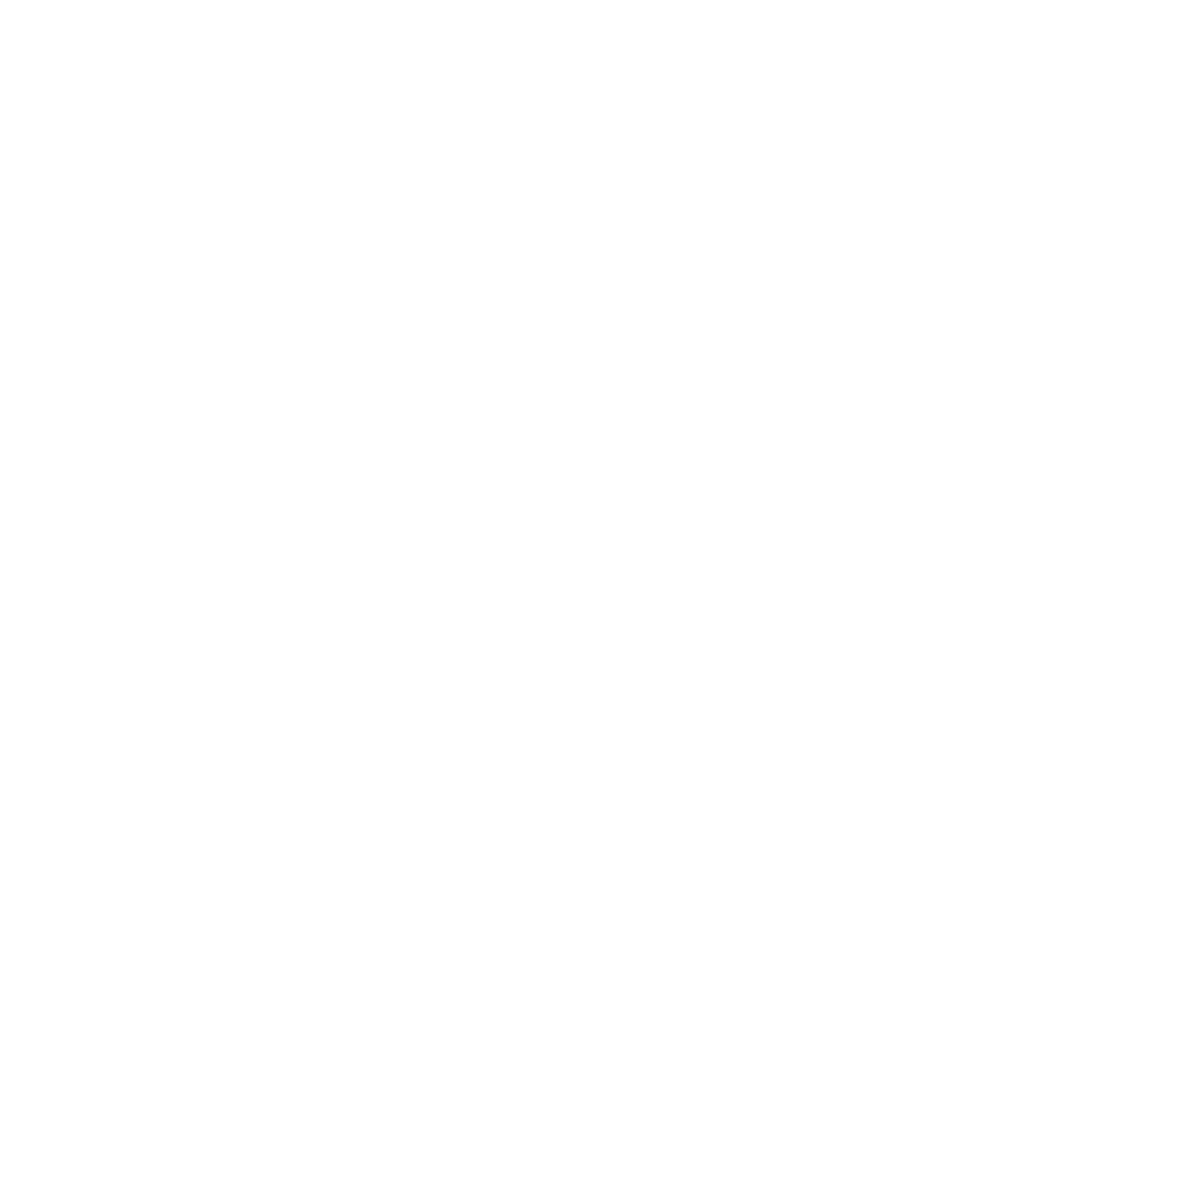 SYNN NORTH HILLS